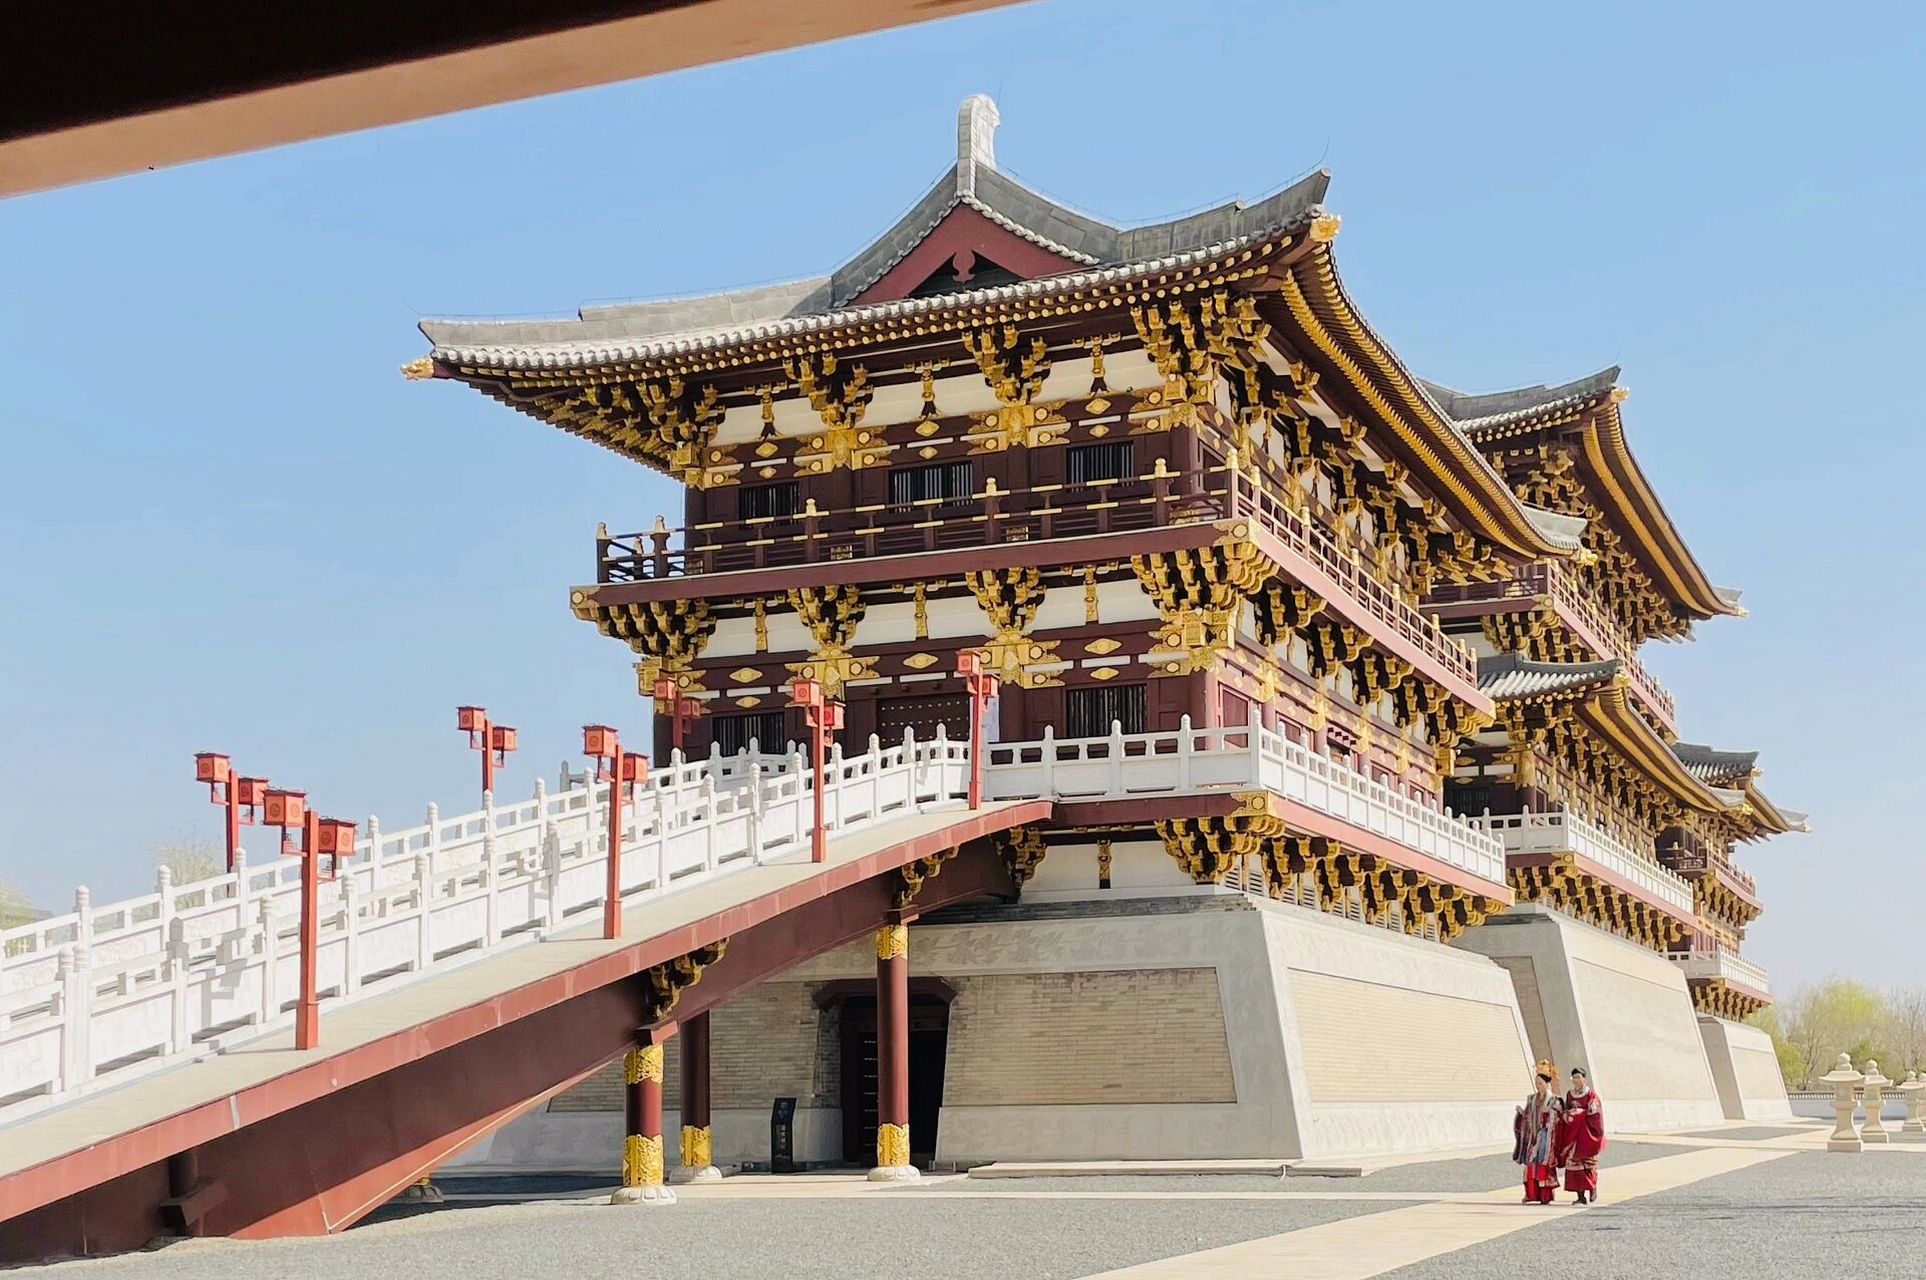 位于洛阳宫西侧,隋唐宫苑,底部的高台是遗址博物馆,顶部的宫殿是想象